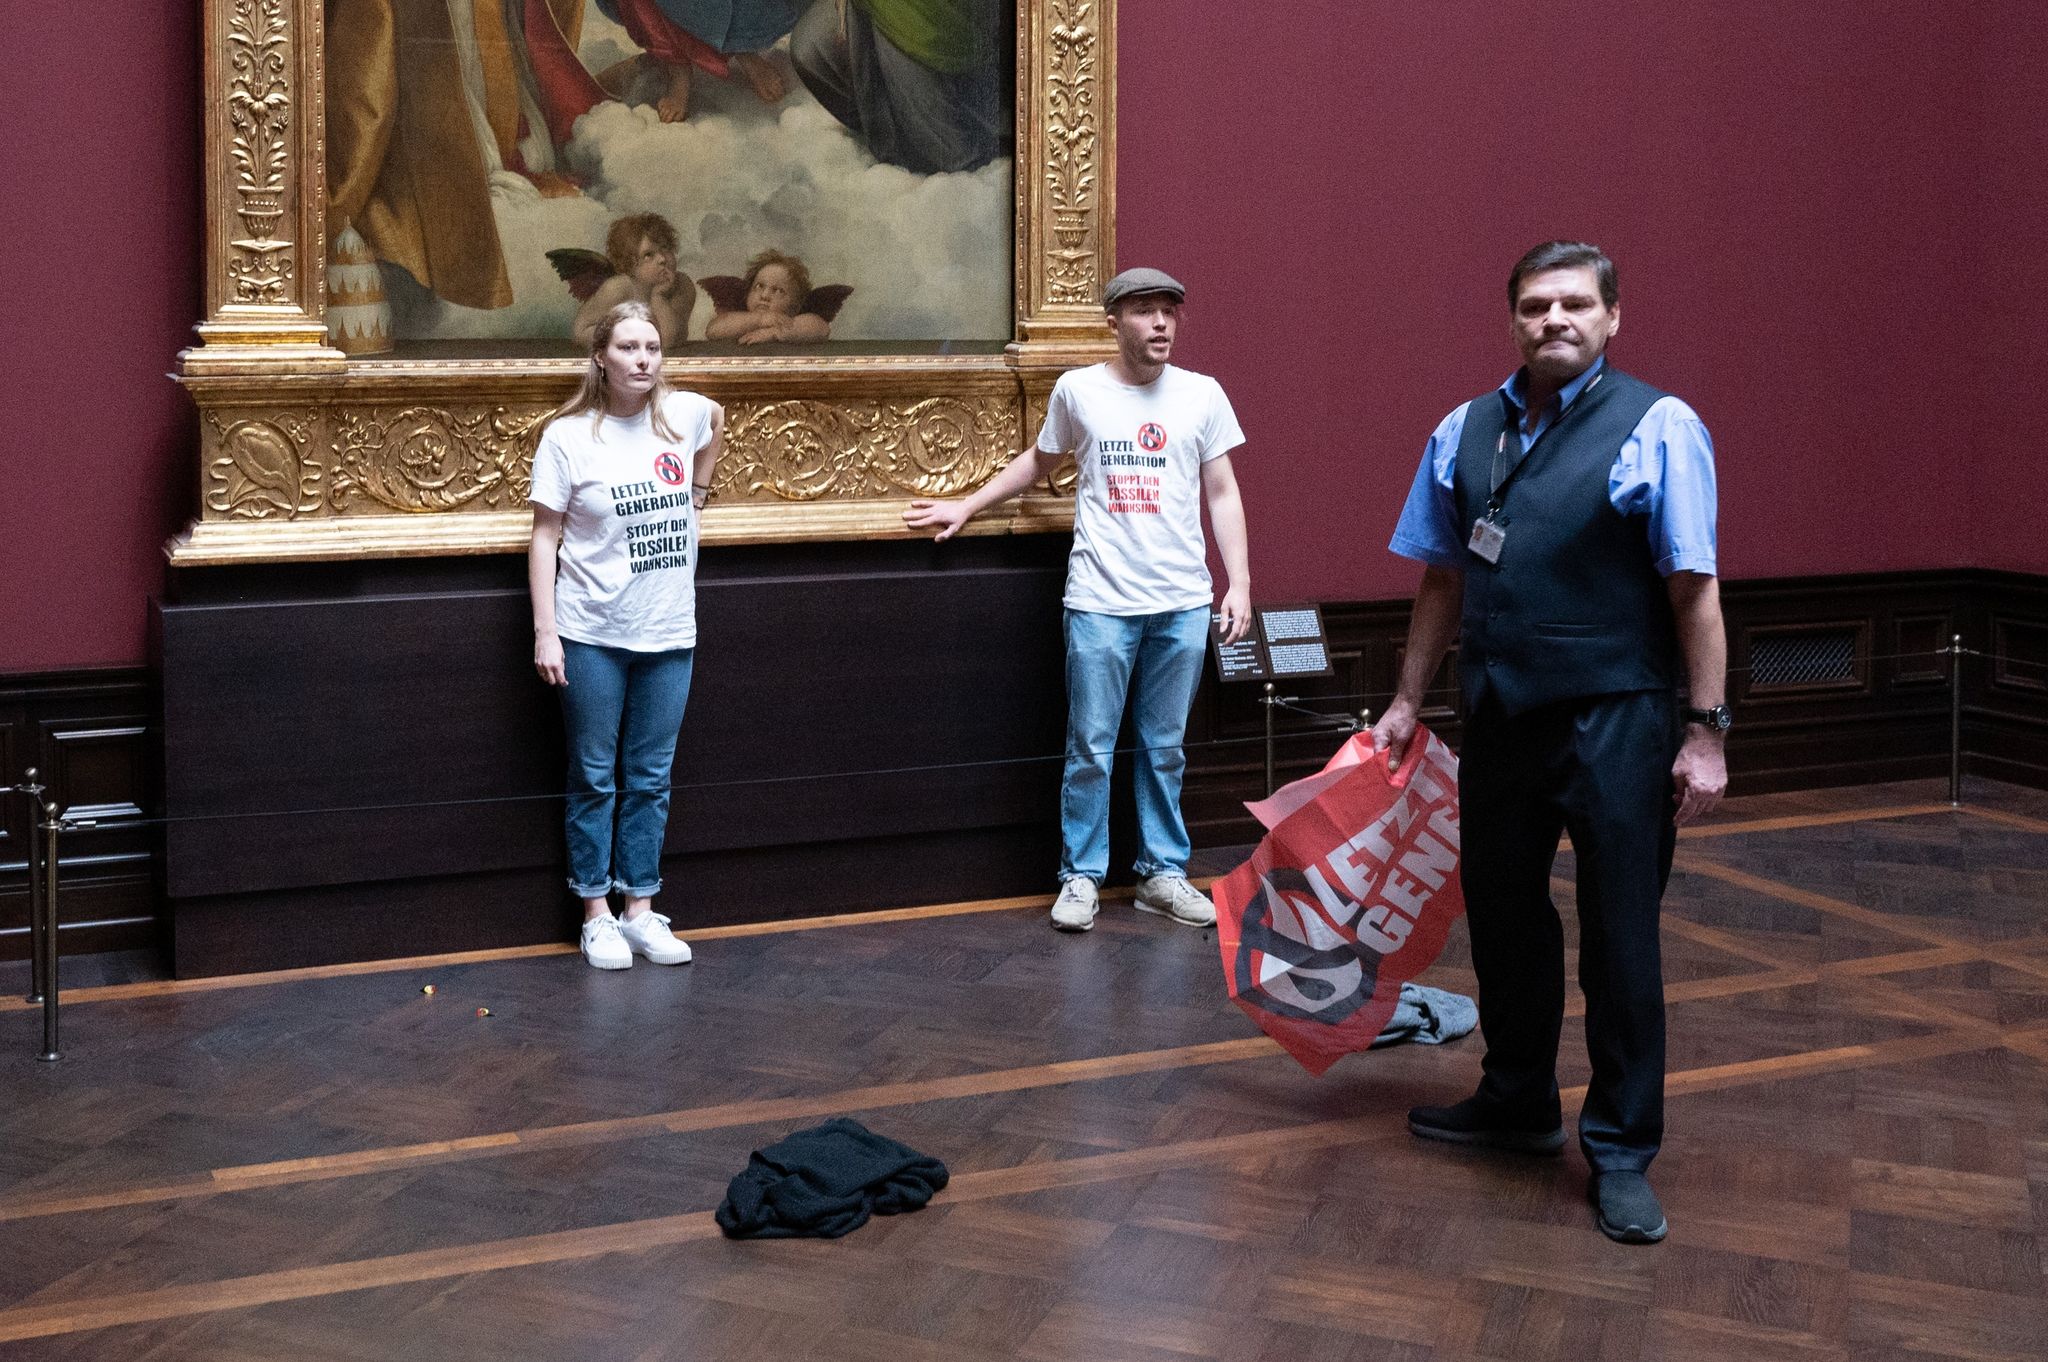 Zwei Umweltaktivisten der Gruppe «Letzte Generation» stehen in der Gemäldegalerie Alte Meister an dem Gemälde «Sixtinische Madonna» von Raffael.